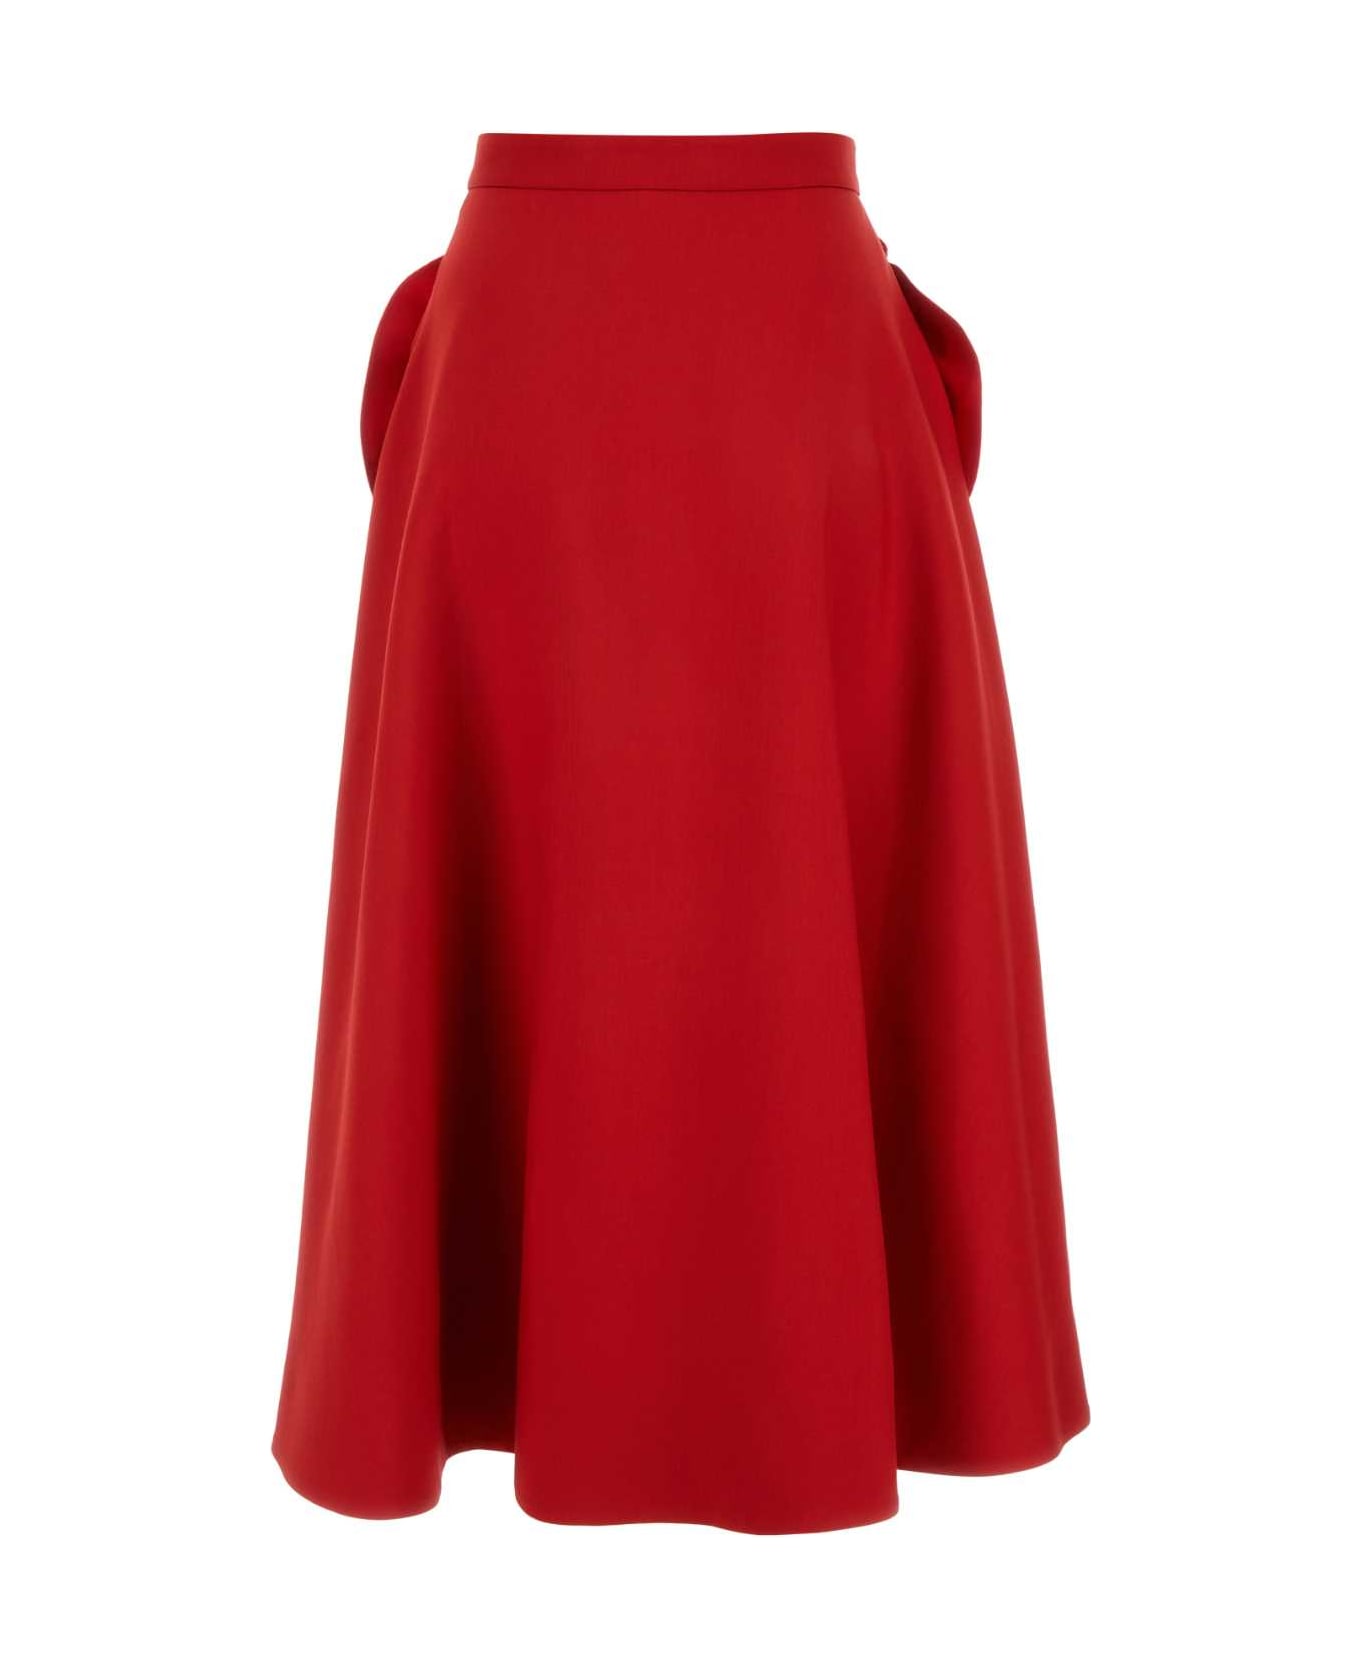 Valentino Garavani Red Crepe Couture Skirt - ROSSO